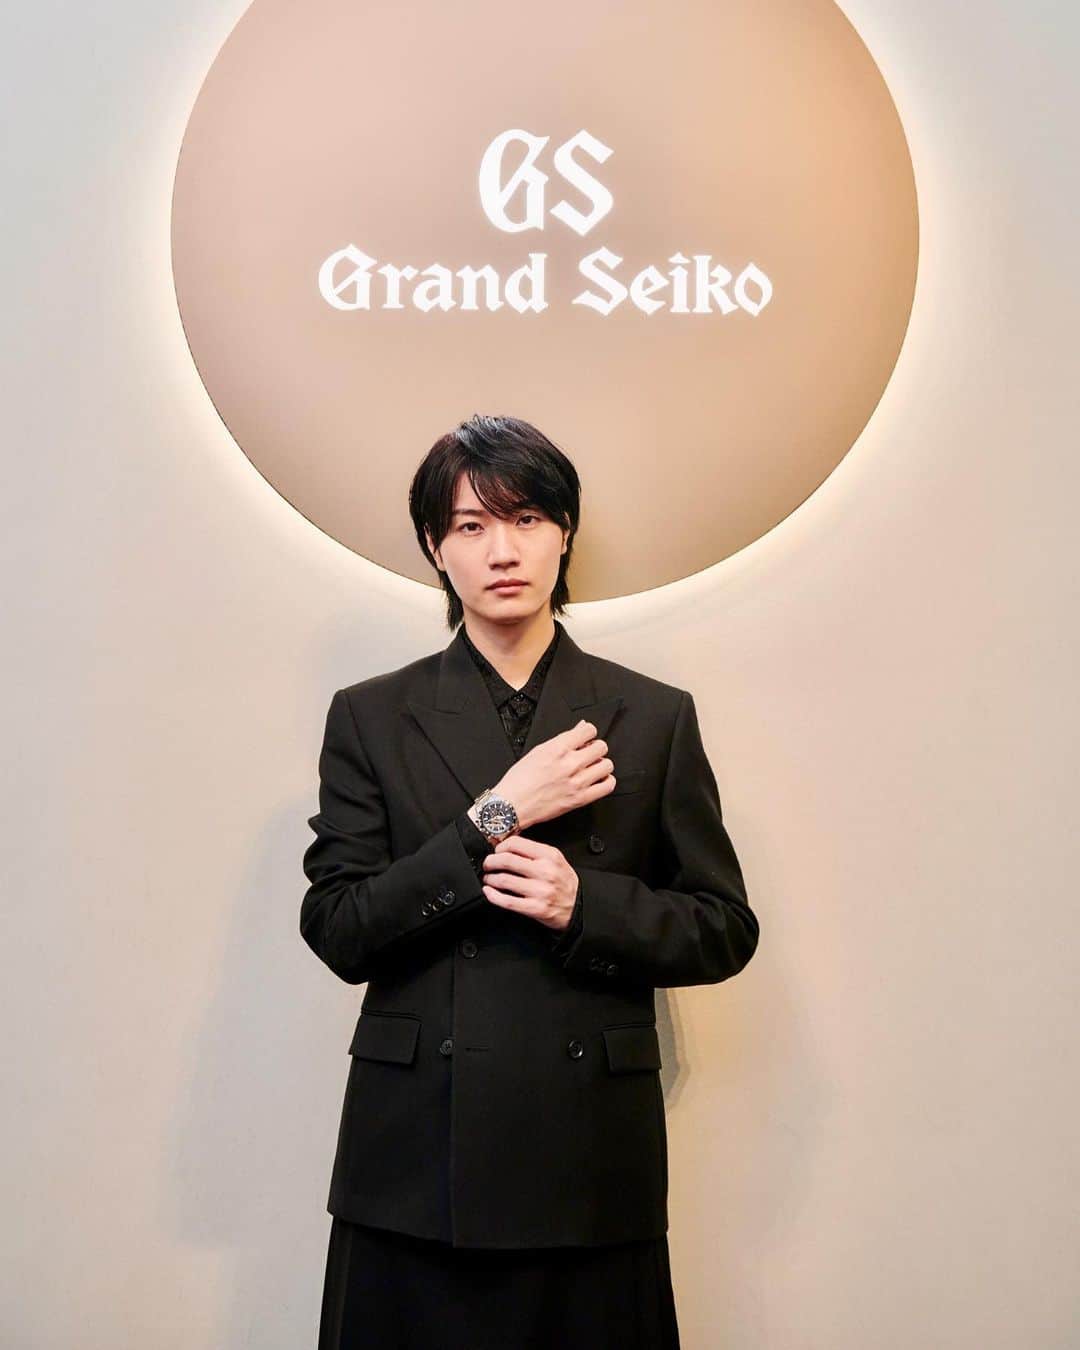 桜田通のインスタグラム：「Grand Seiko  製品の自社一貫製造を貫き、唯一無二の高精度と高品質ムーブメントを生み出してきた日本が誇る腕時計ブランド グランドセイコーさんのスペシャルなイベント「五感」を通じて特別なひと時が体感できる『ALIVE IN TIME through the FIVE SENSES』にご招待いただきました✨  会場では、グランドセイコーさんの歴史ある腕時計のアーカイブや、精巧な時計を構成する細やかな部品の展示など興味深いものが沢山ありました！  そしてグランドセイコーさんの魅力を五感で体験できるということで、今回「味覚」と「嗅覚」では「ミシュランガイド東京2023」で二つ星を獲得した長谷川 在佑さんがメニュー設計をした希少価値の高いラグジュアリーな食体験など本当に幸せな時間を過ごすことができました🍽  バリスタの専門性を追求されている『スペシャルティコーヒー』を世界に広める國友 栄一さんとのタッグで、このイベント限定のスペシャルな和食とコーヒーの融合を楽しませていただきました☕️✨  イベント全体を通してまさにグランドセイコーさんの歴史や、進化をし続けていく挑戦の予感など、情熱の止まらない世界観を存分に堪能することができました✨  僕はグランドセイコーさんのエボリューション 9 コレクションの高精度なメカニカルクロノグラフ“TENTAGRAPH”を身に付けて参加したのですが、手元に時間を確認することができるこの腕時計があるのに、思わず時間を忘れて没頭してしまうほど素晴らしい経験をさせていただきました😊✨  僕は大切な日に特に腕時計を身に付けますが、この"TENTAGRAPH"と出逢い、経験をした大切な思い出と共に、これからまた新たな時をさらに大切に刻んでいきたいと強く想いました😌  皆さんにとってもこれから続いていく人生が素晴らしい日々でありますように、そしてそんな一秒一秒を大切な時計と共に出逢い、刻んでいけることを願っています🌟  #grandseiko #グランドセイコー #aliveintime #grandseiko5senses #pr  服 @versace」